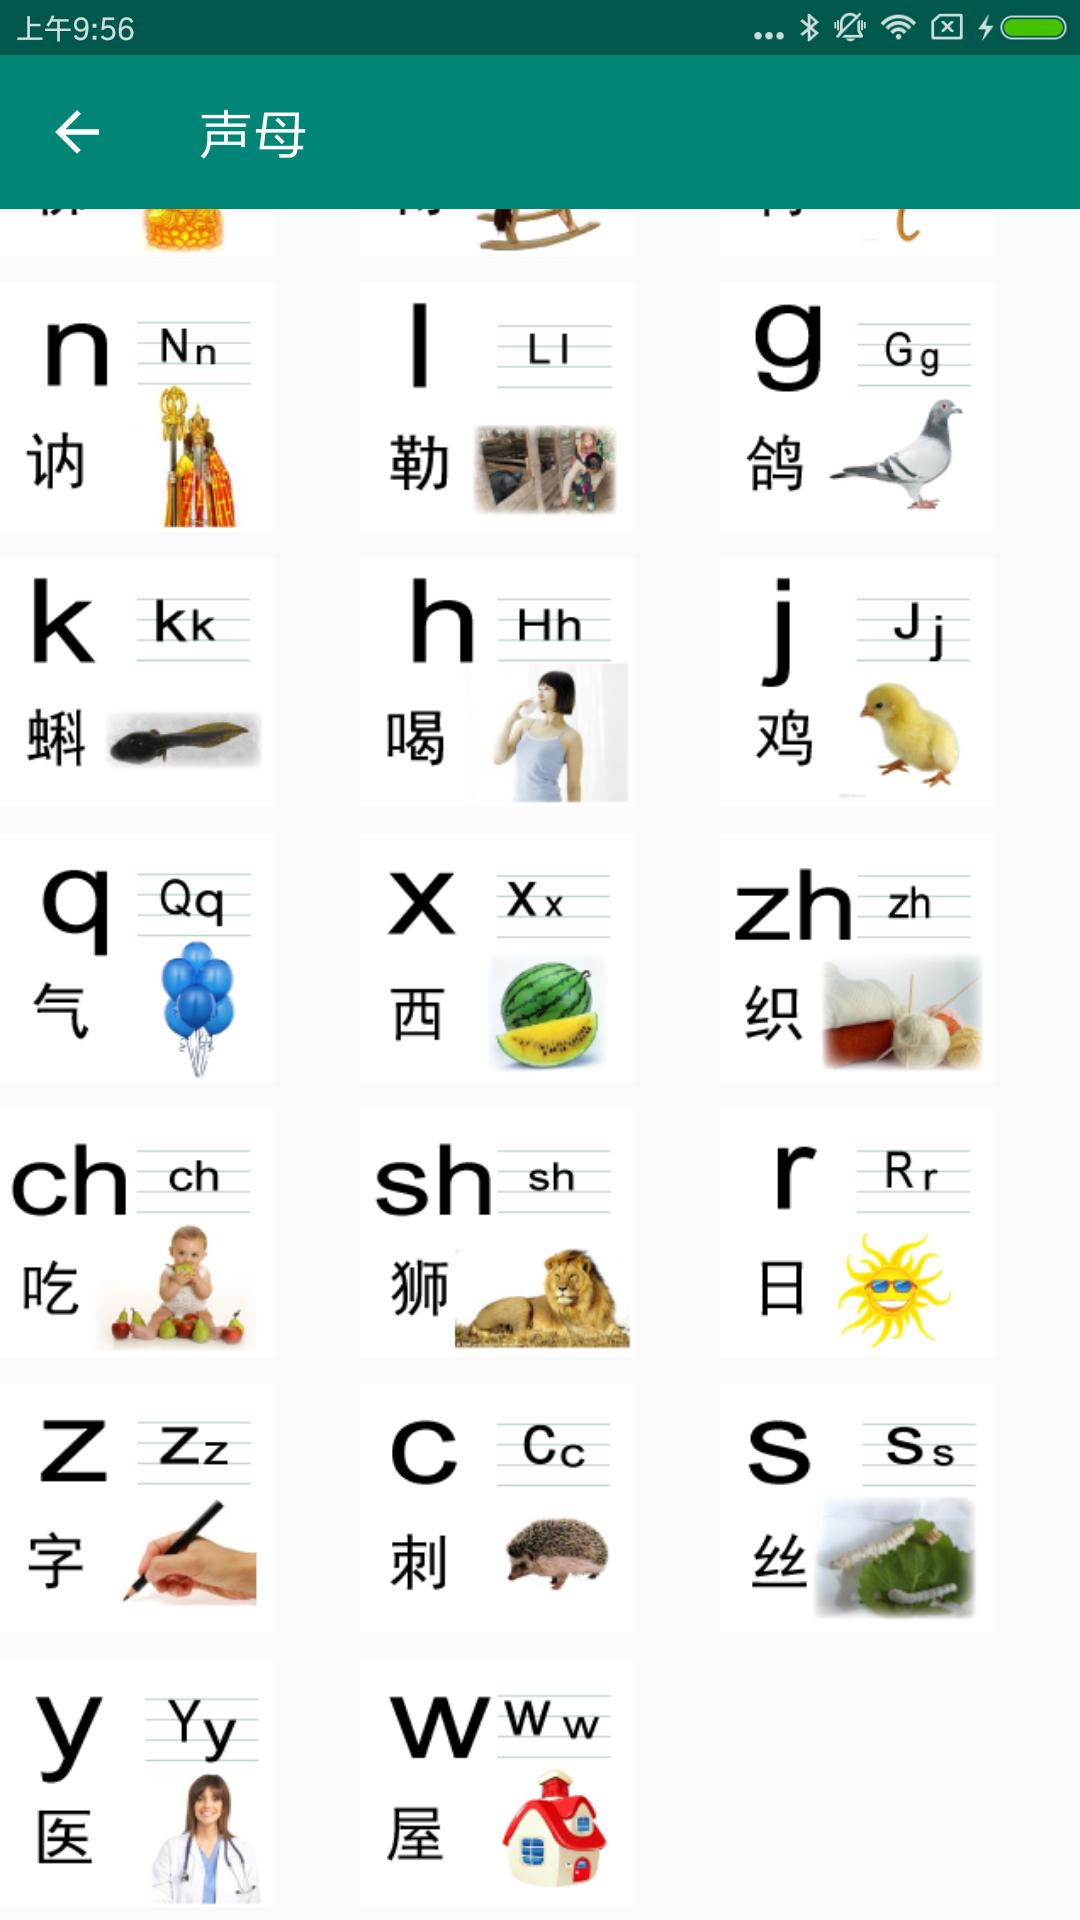 声母韵母 日语五十音英语48个国际音标26个字母点读机para Android